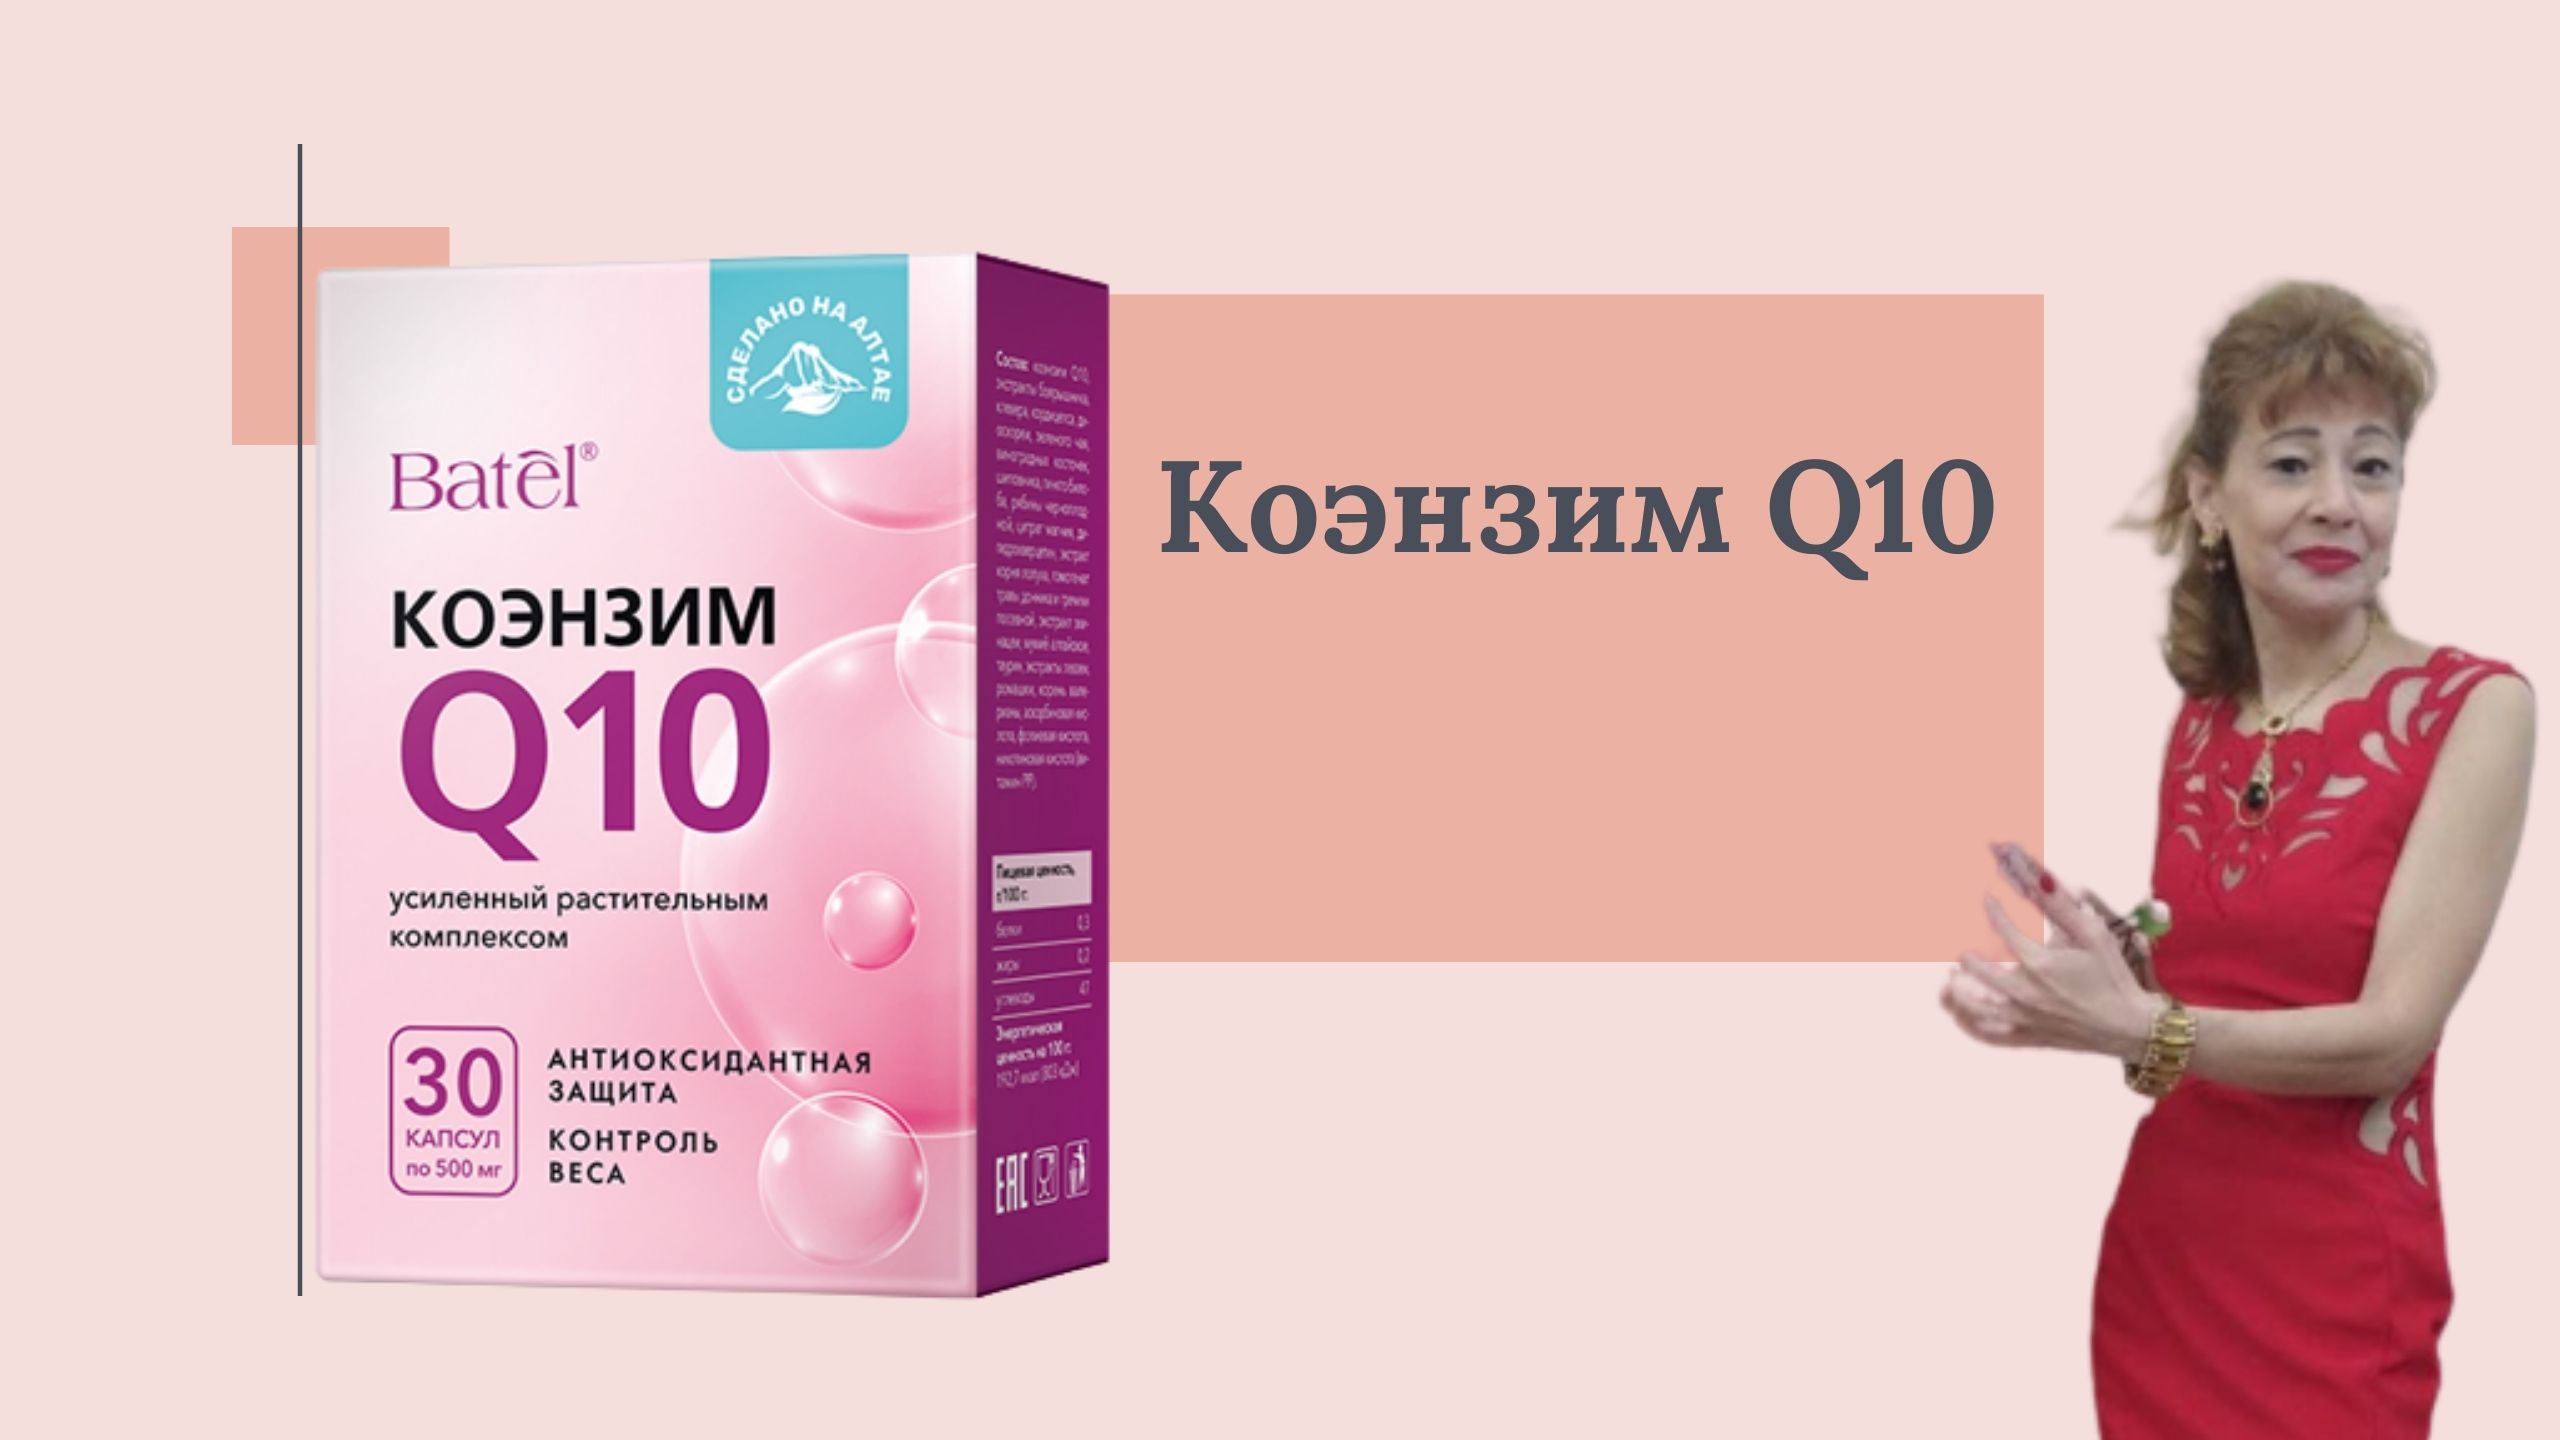 Коэнзим Q10 Купить В Минске В Аптеках